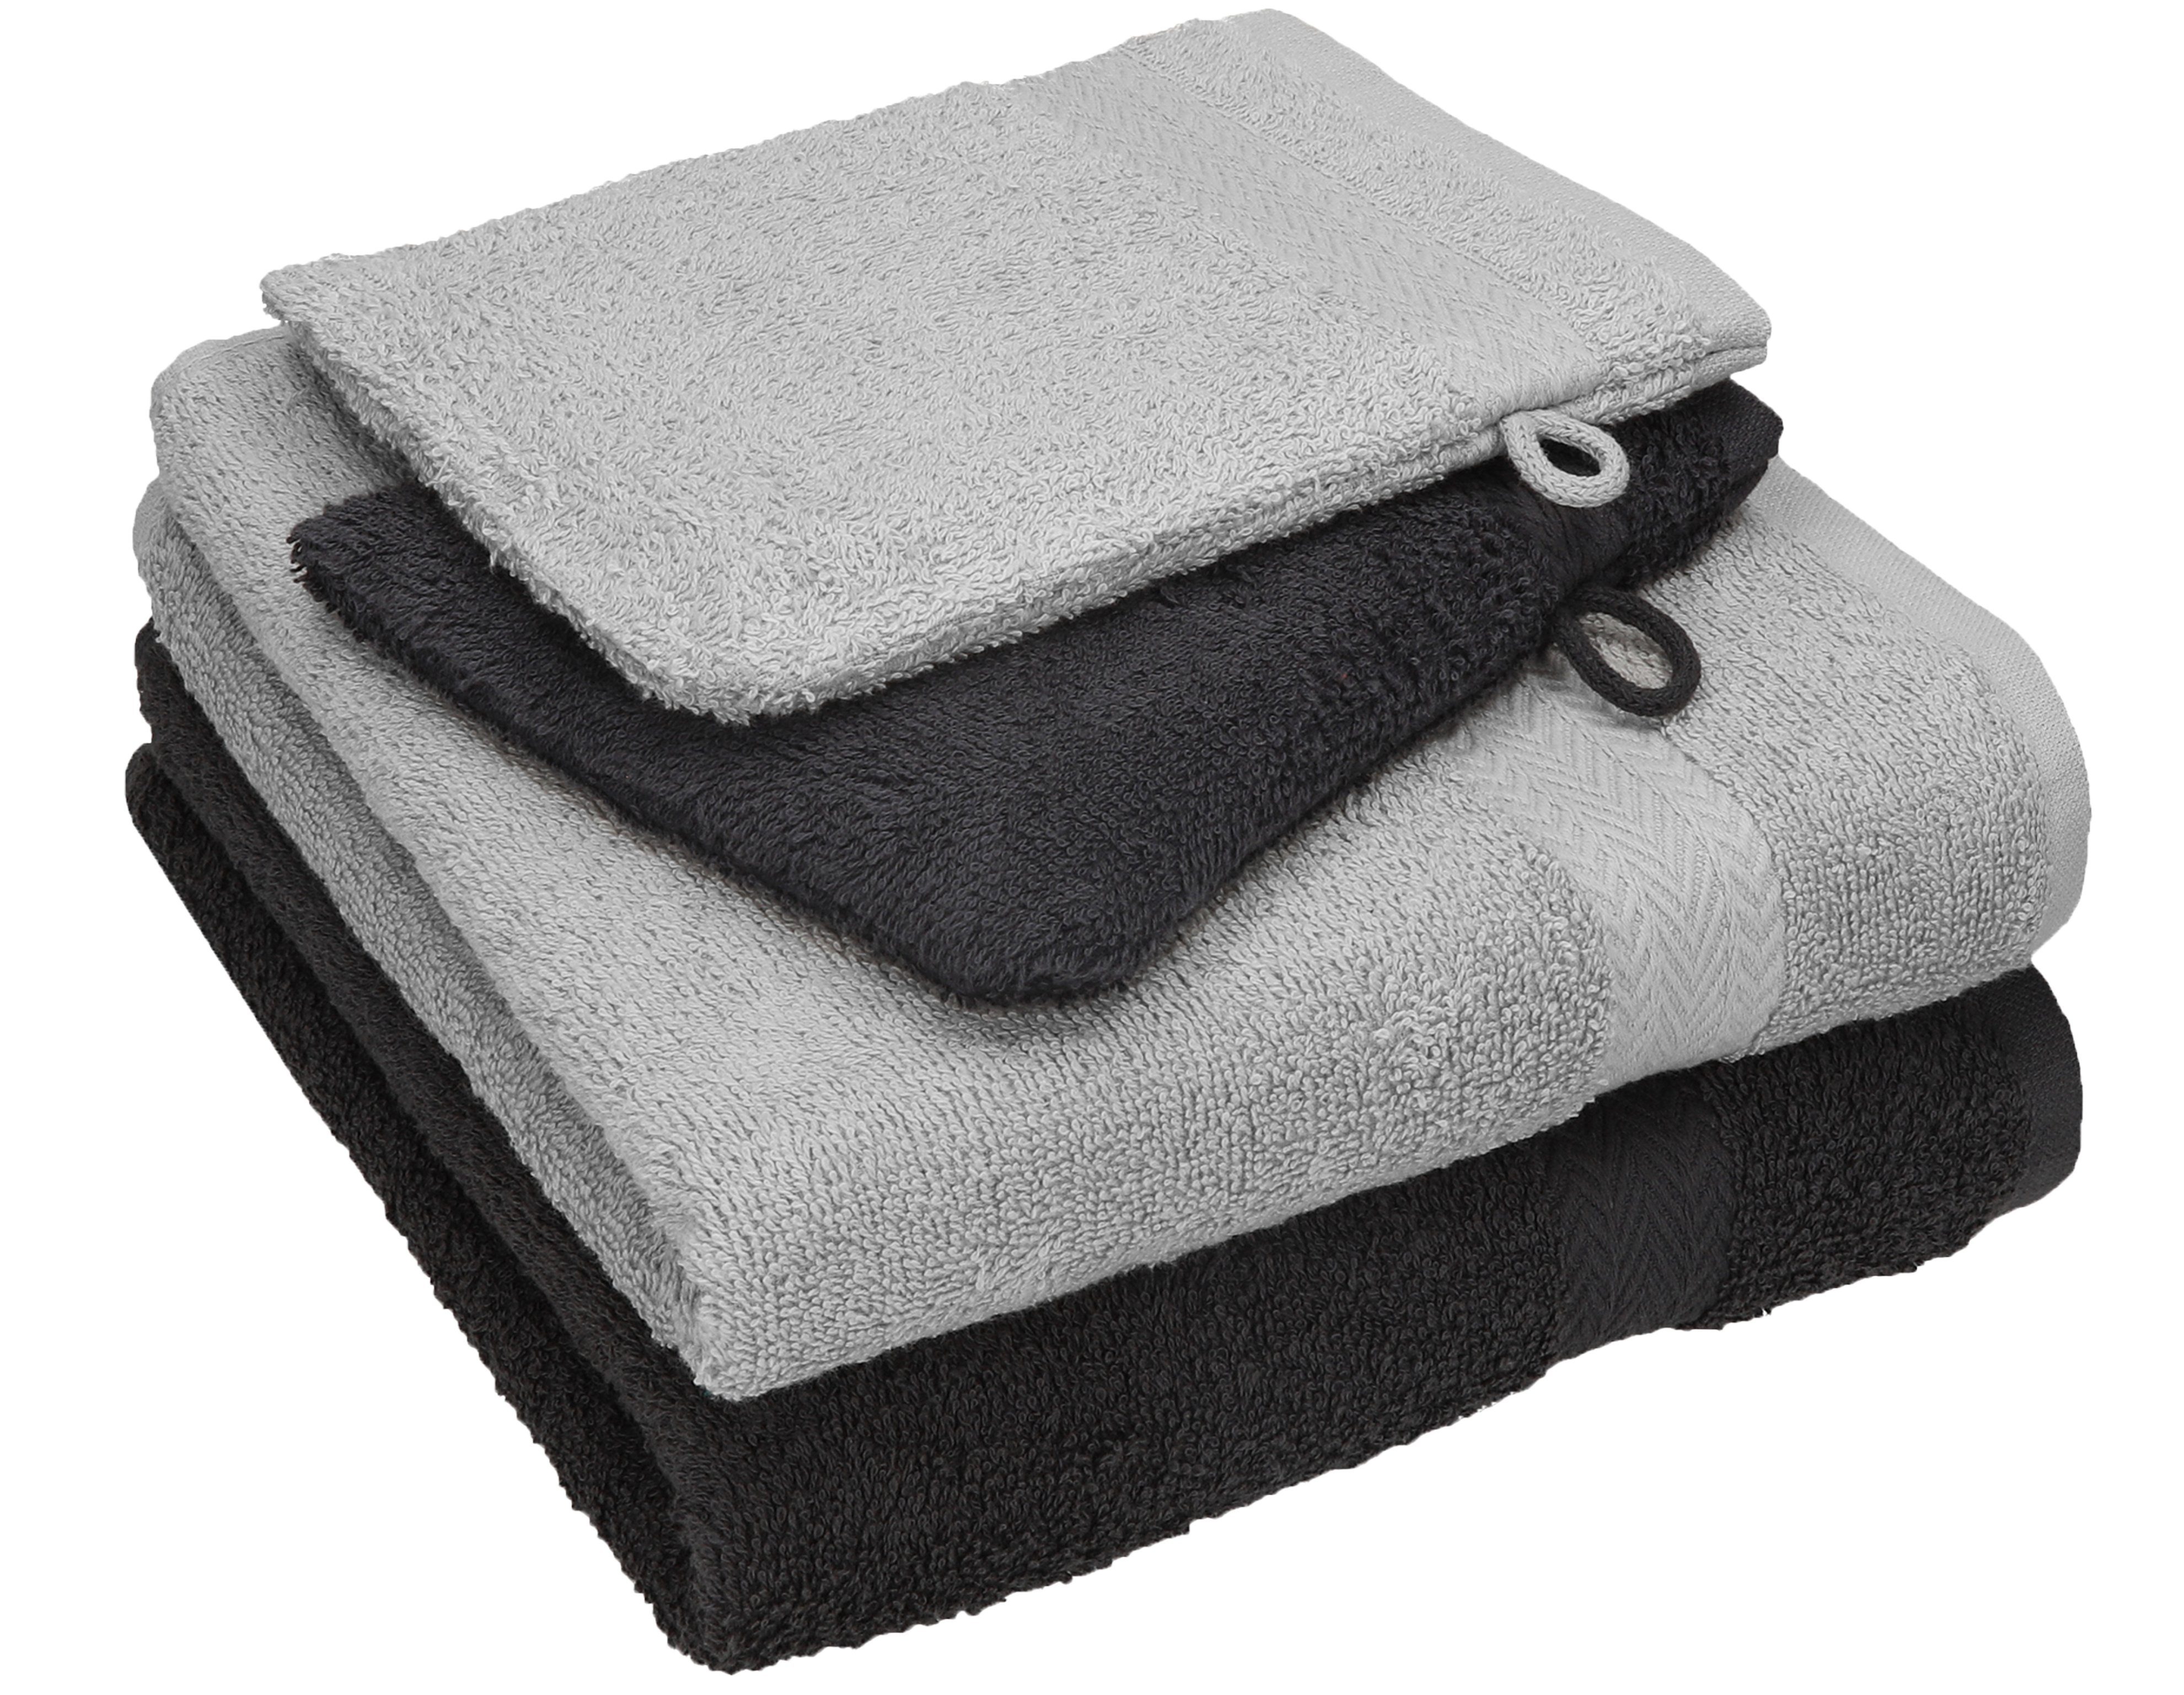 Betz Handtuch Set 4 tlg. Handtuch Set HAPPY Pack 100% Baumwolle 2 Handtücher 2 Waschhandschuhe, 100% Baumwolle graphit grau - silber grau